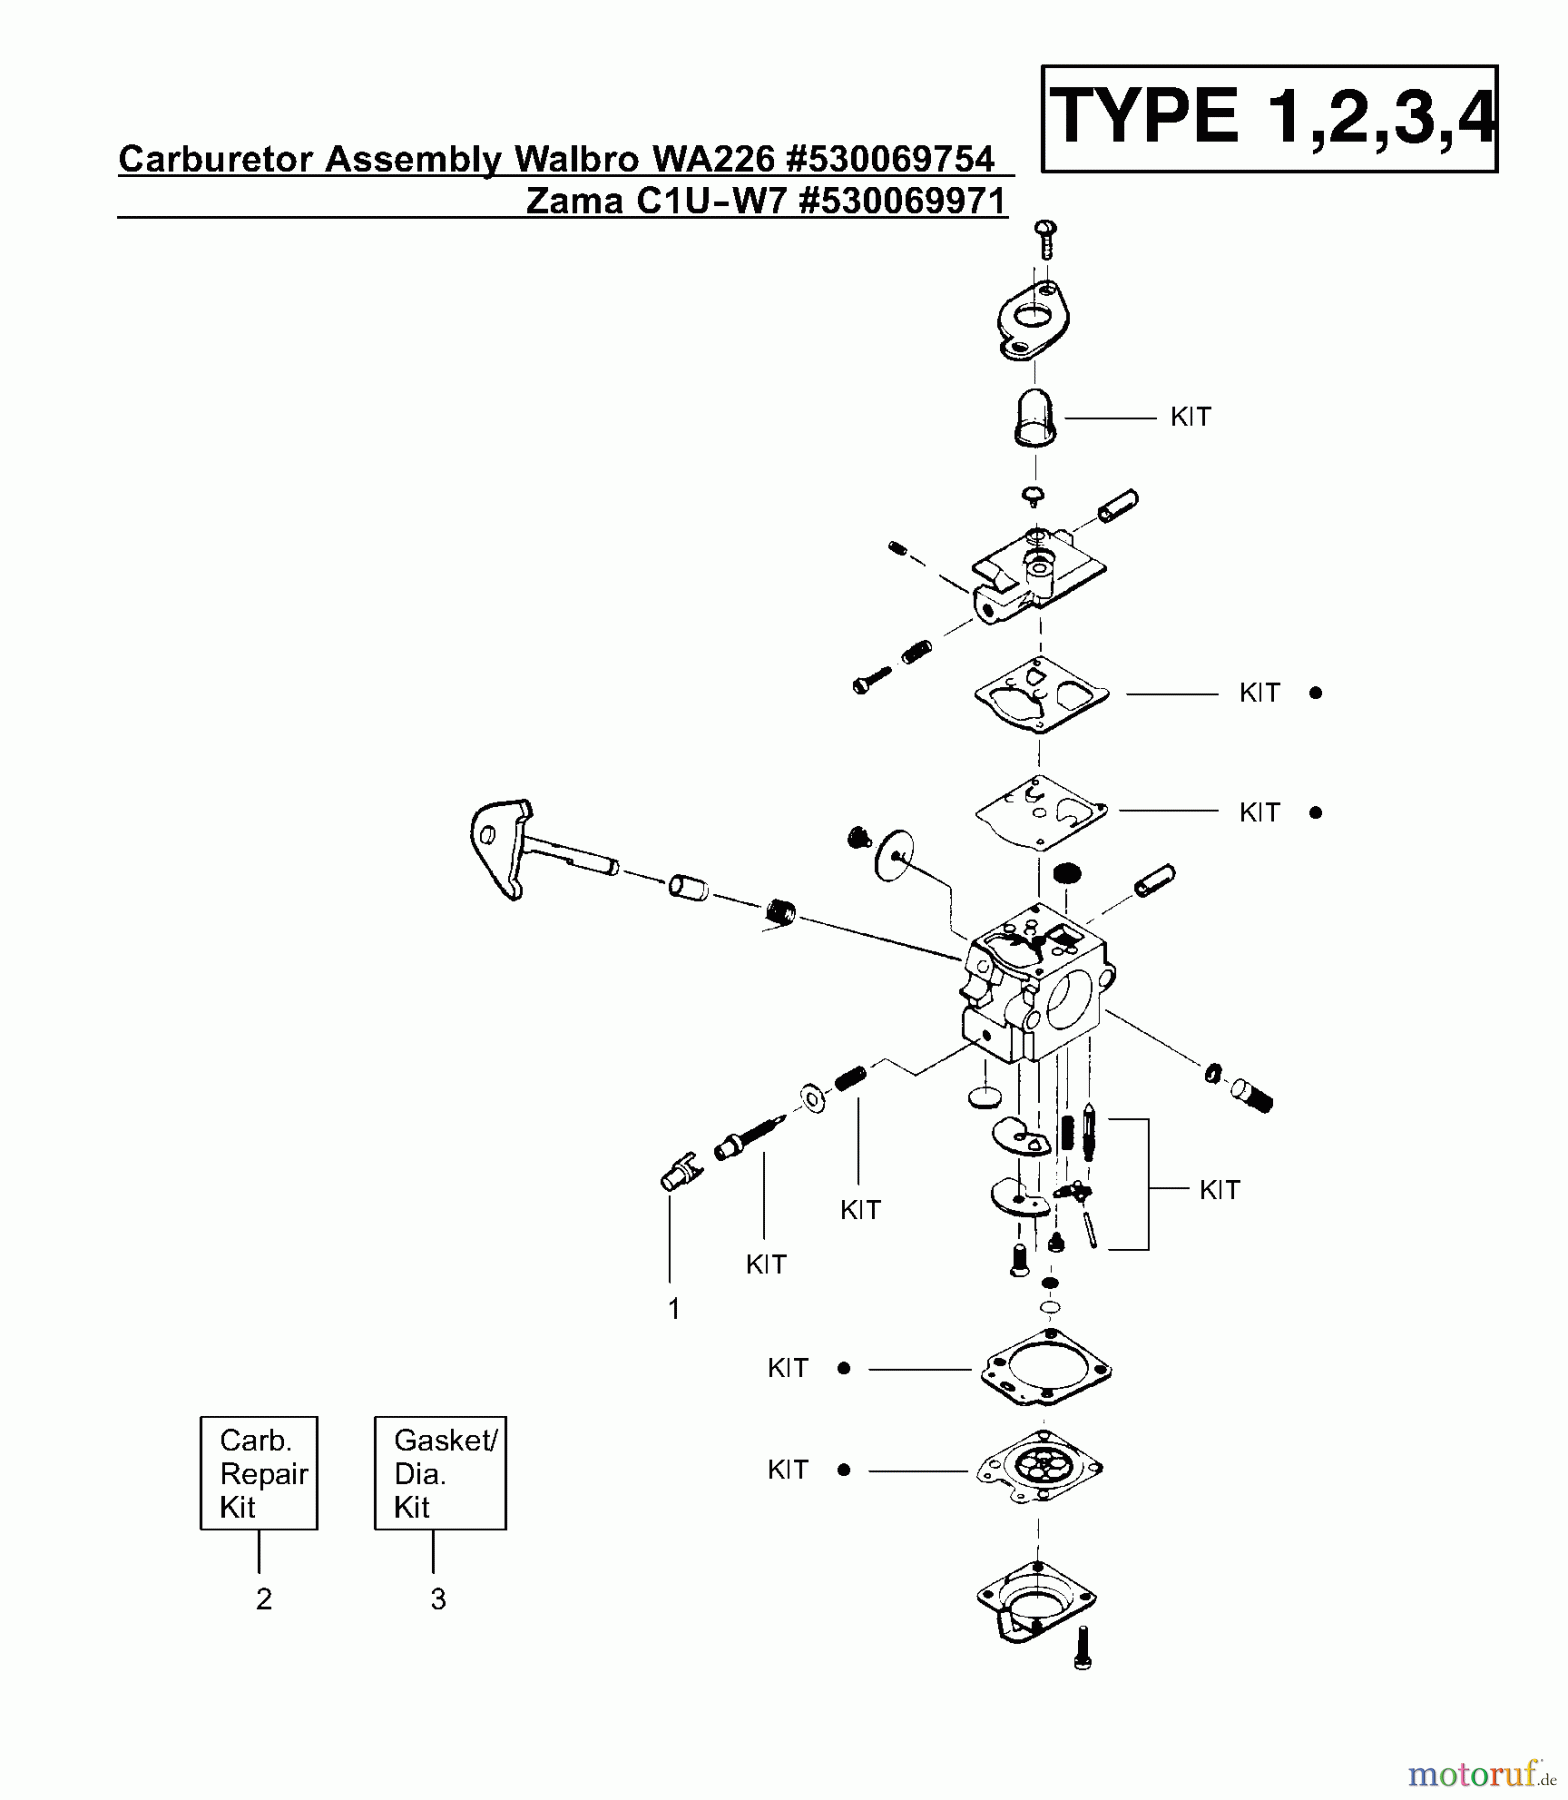  Poulan / Weed Eater Motorsensen, Trimmer XT400 (Type 1) - Weed Eater String Trimmer Carburetor Assembly (Walbro WA226) P/N 530069754, (Zama C1U-W7) P/N 530069971